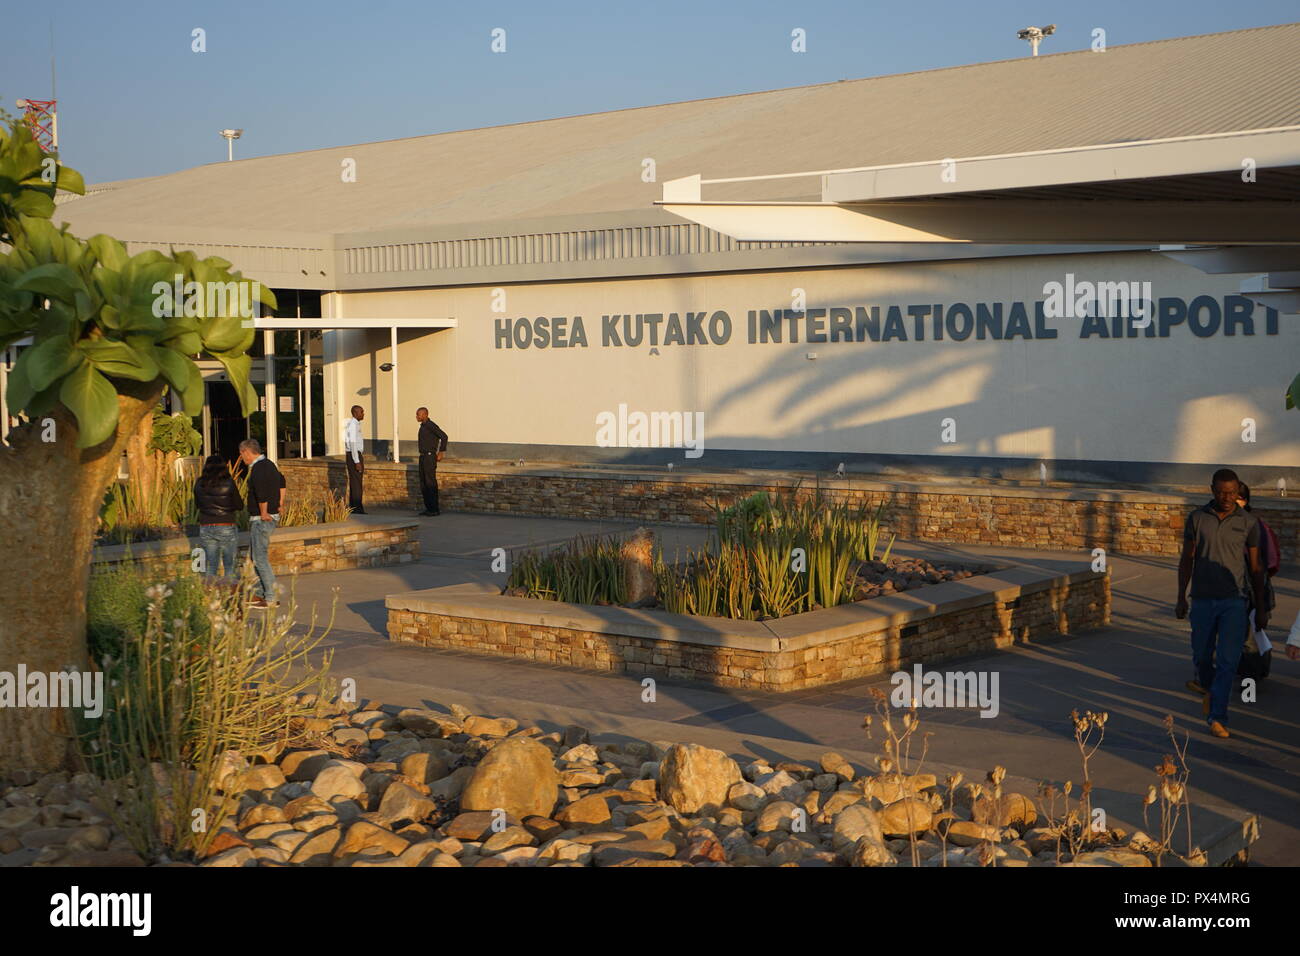 Internationaler Flughafen, Hosea Kutako de Windhoek, Namibie Banque D'Images